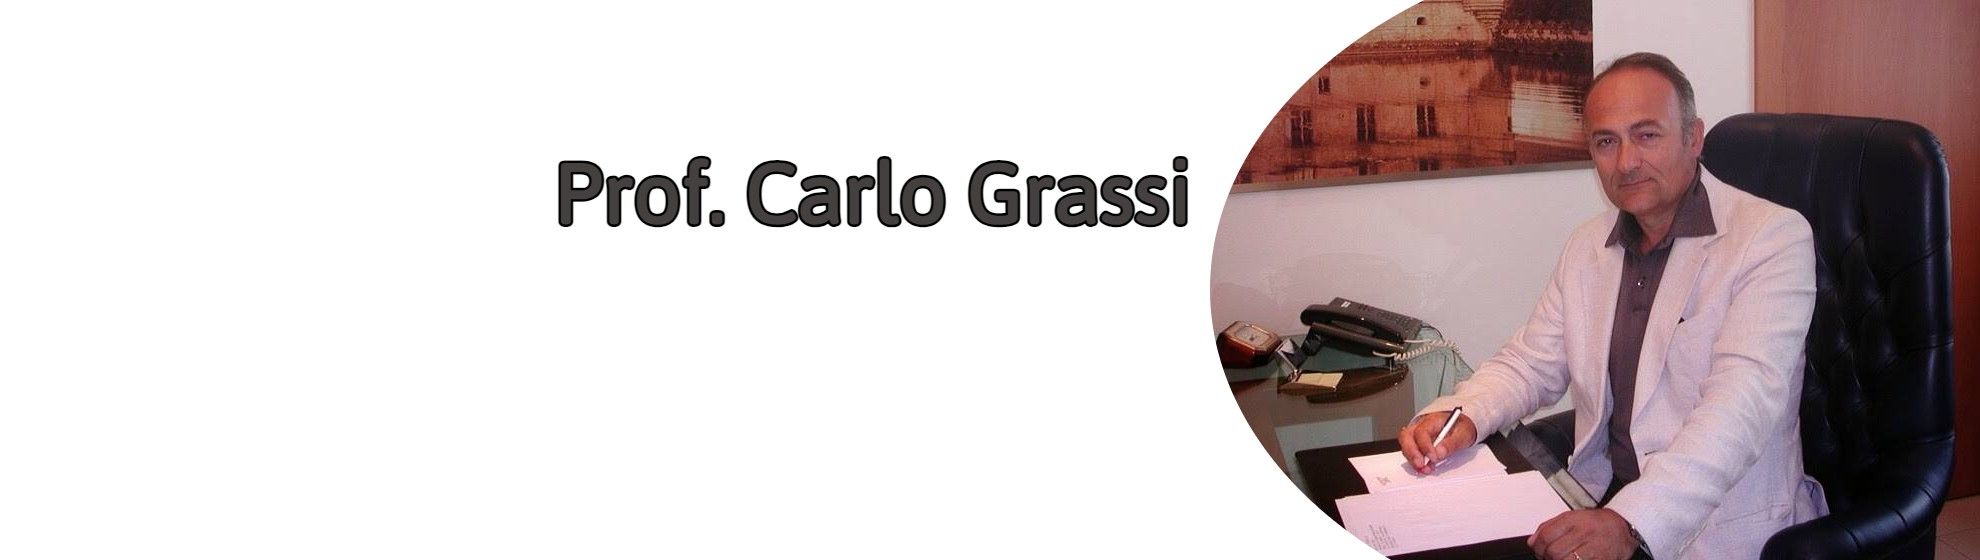 Prof. Carlo Grassi